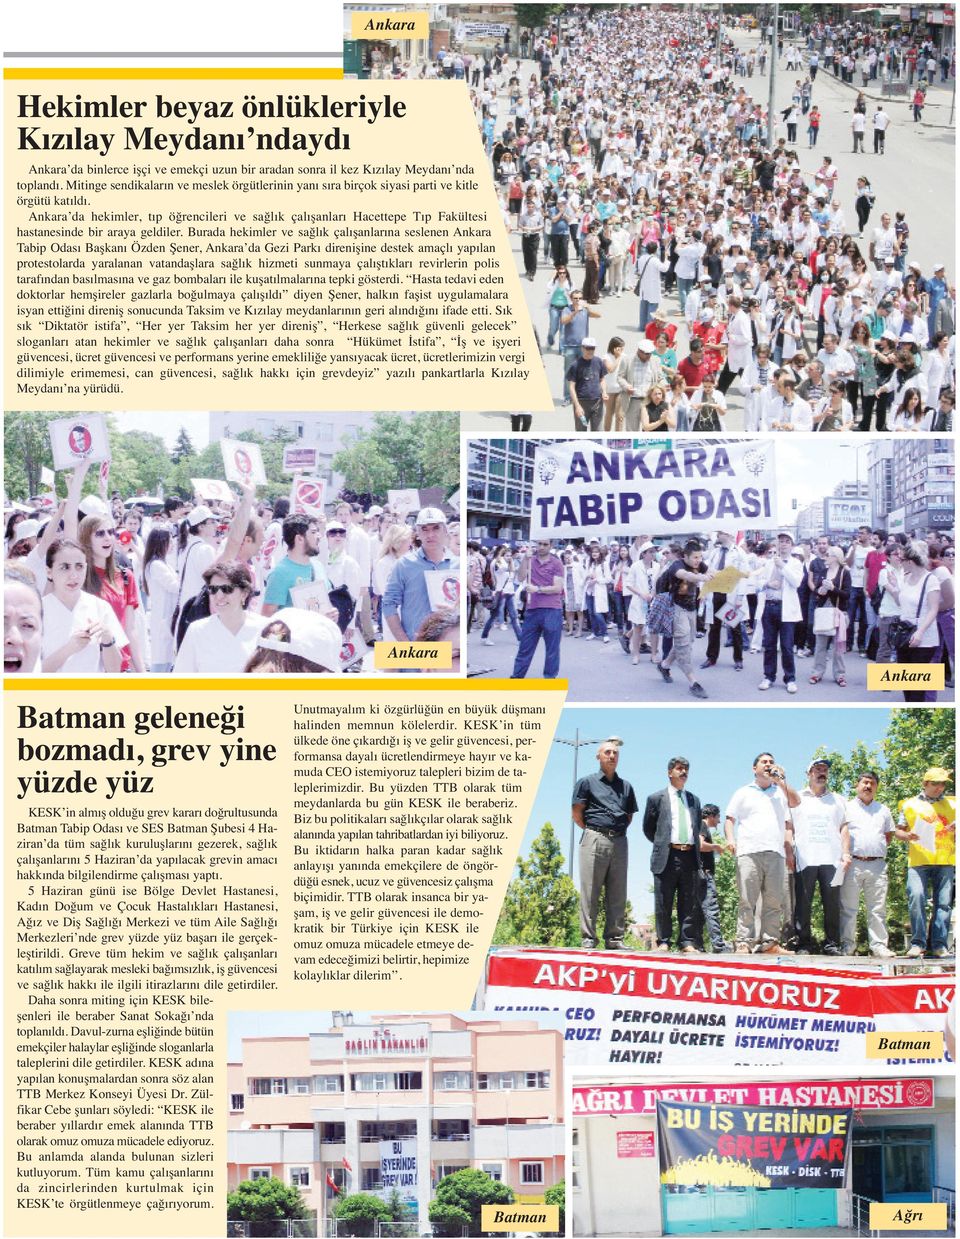 Ankara da hekimler, tıp öğrencileri ve sağlık çalışanları Hacettepe Tıp Fakültesi hastanesinde bir araya geldiler.